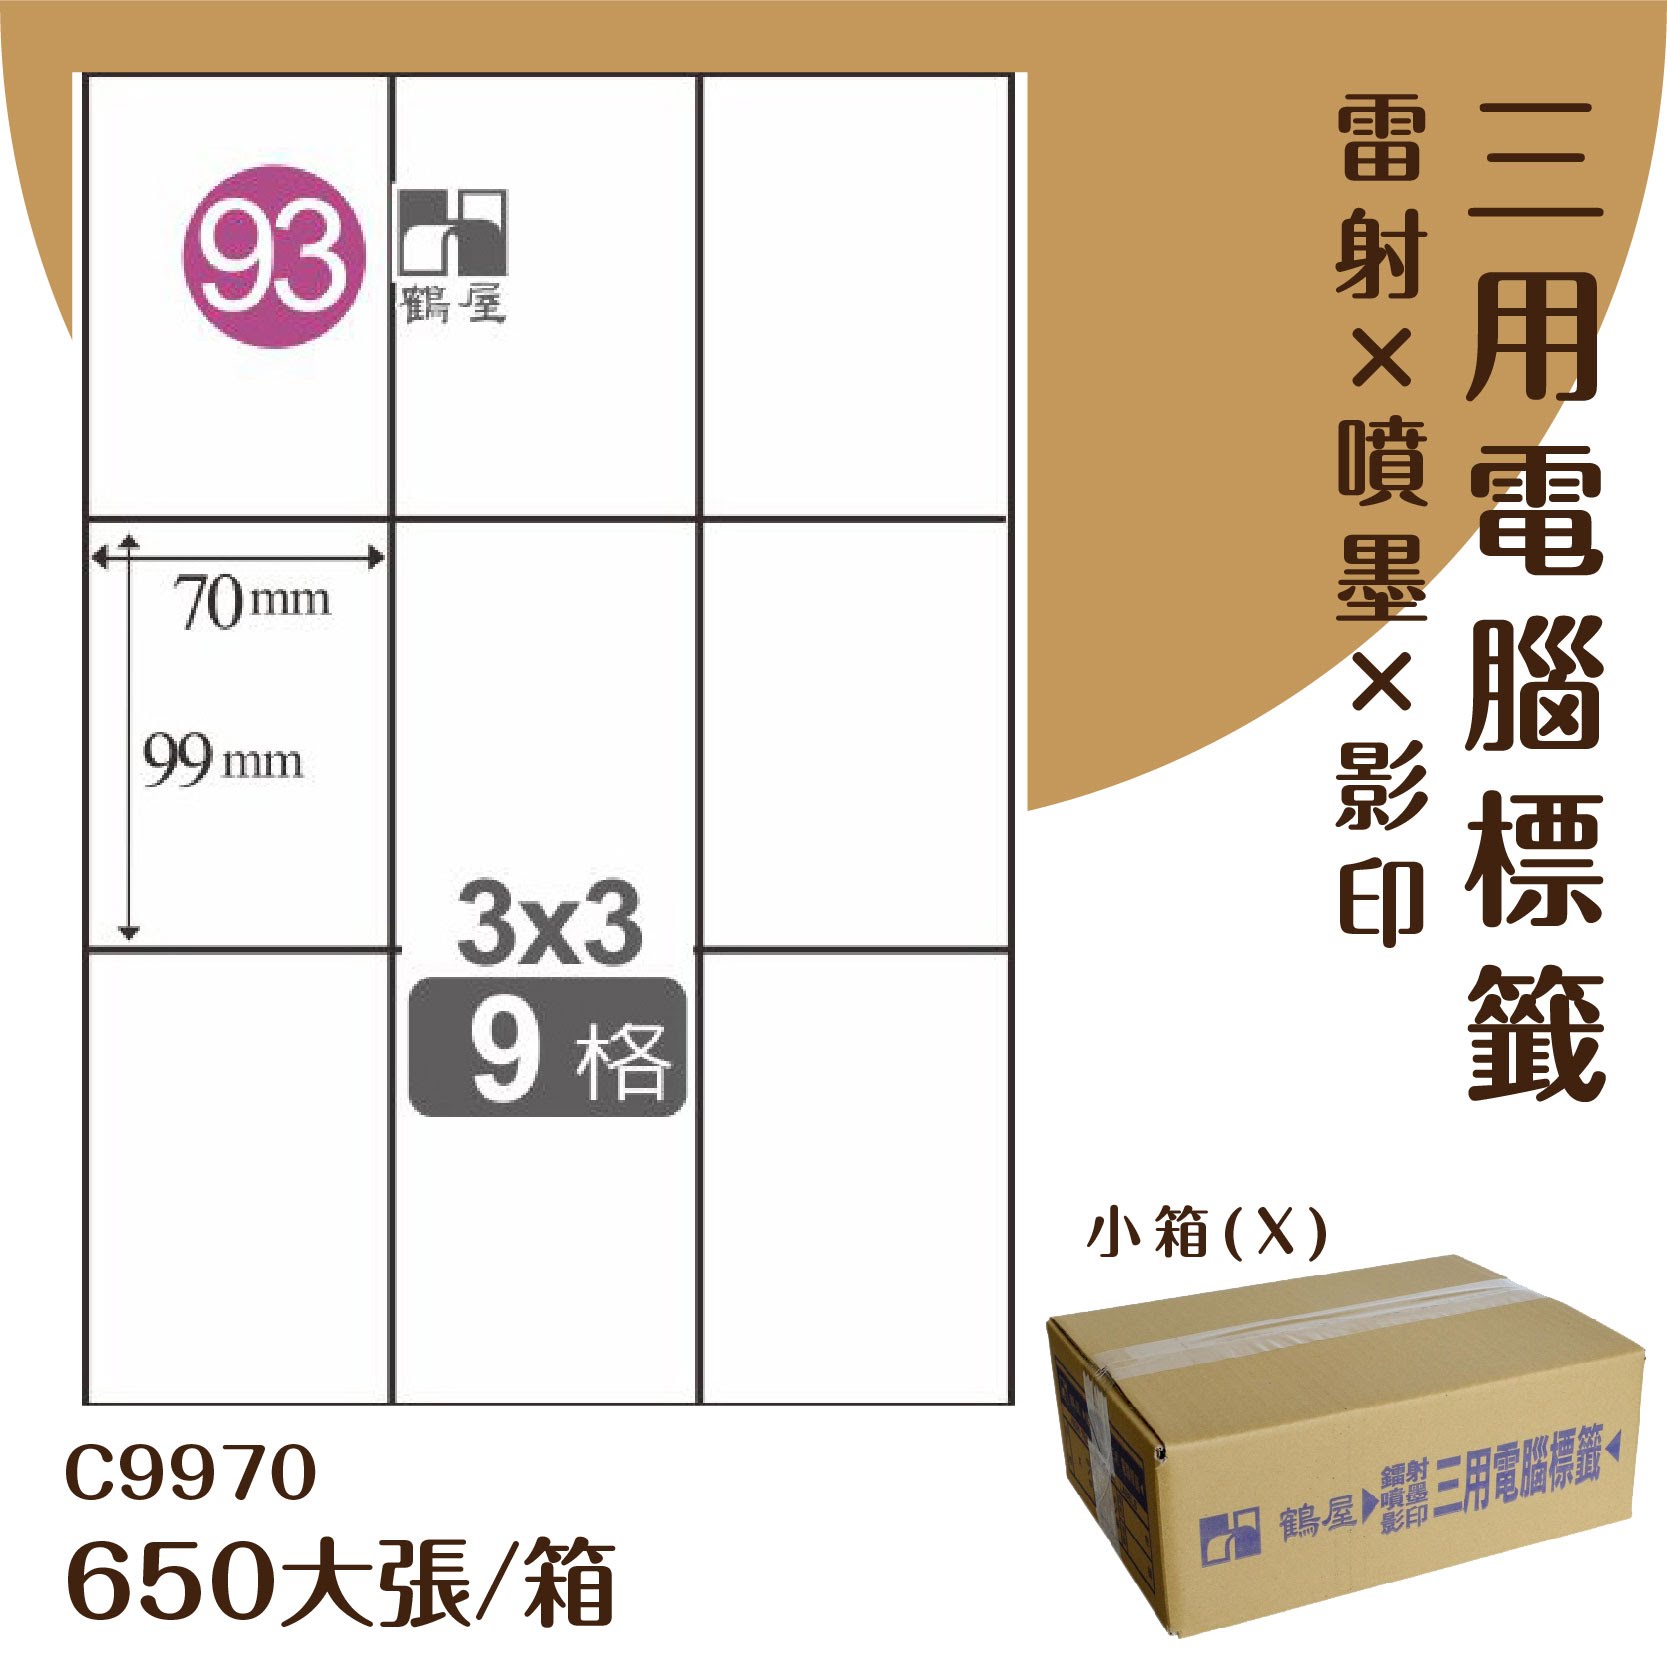 【優質好物】鶴屋 電腦標籤紙-白色 C9970 9格 650大張/小箱 (自黏貼紙/三用標籤/影印&雷射&噴墨)